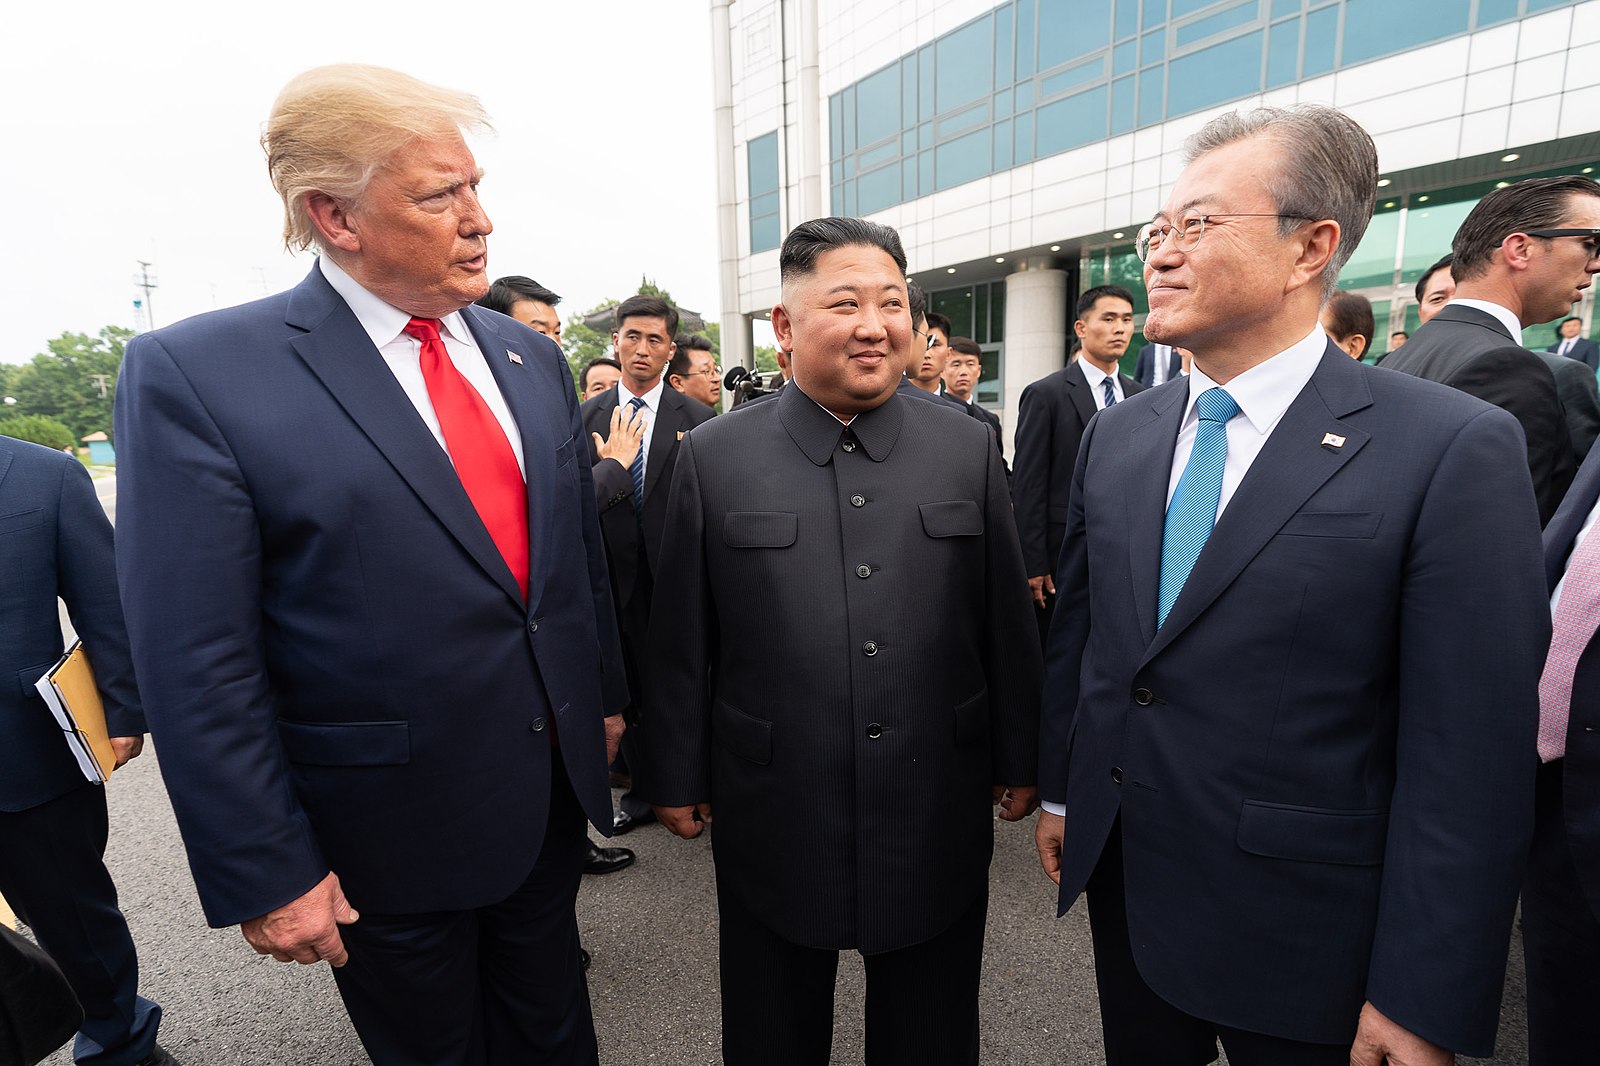 Tổng thống Mỹ Donald Trump gặp lãnh đạo Triều Tiên Kim Jong Un và Tổng thống Hàn Quốc Moon Jae In ở biên giới Triều - Hàn ngày 30/6/2019 (ảnh: Nhà Trắng).